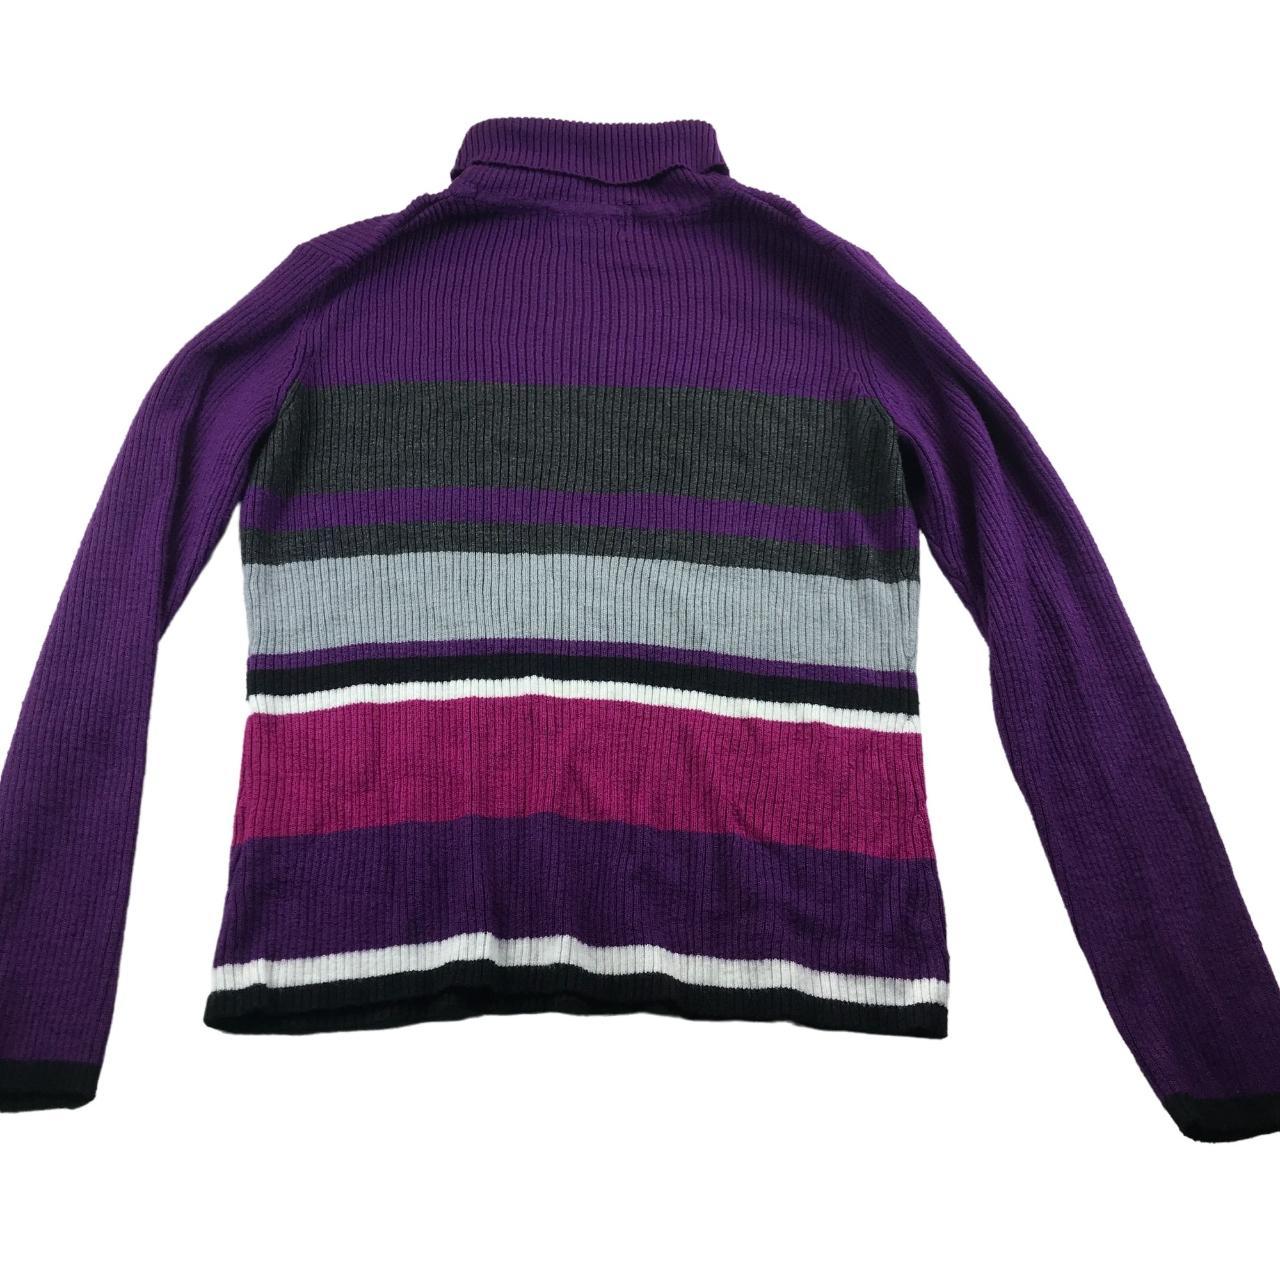 Vintage Y2K Sag Harbor Turtleneck Sweater Size M... - Depop